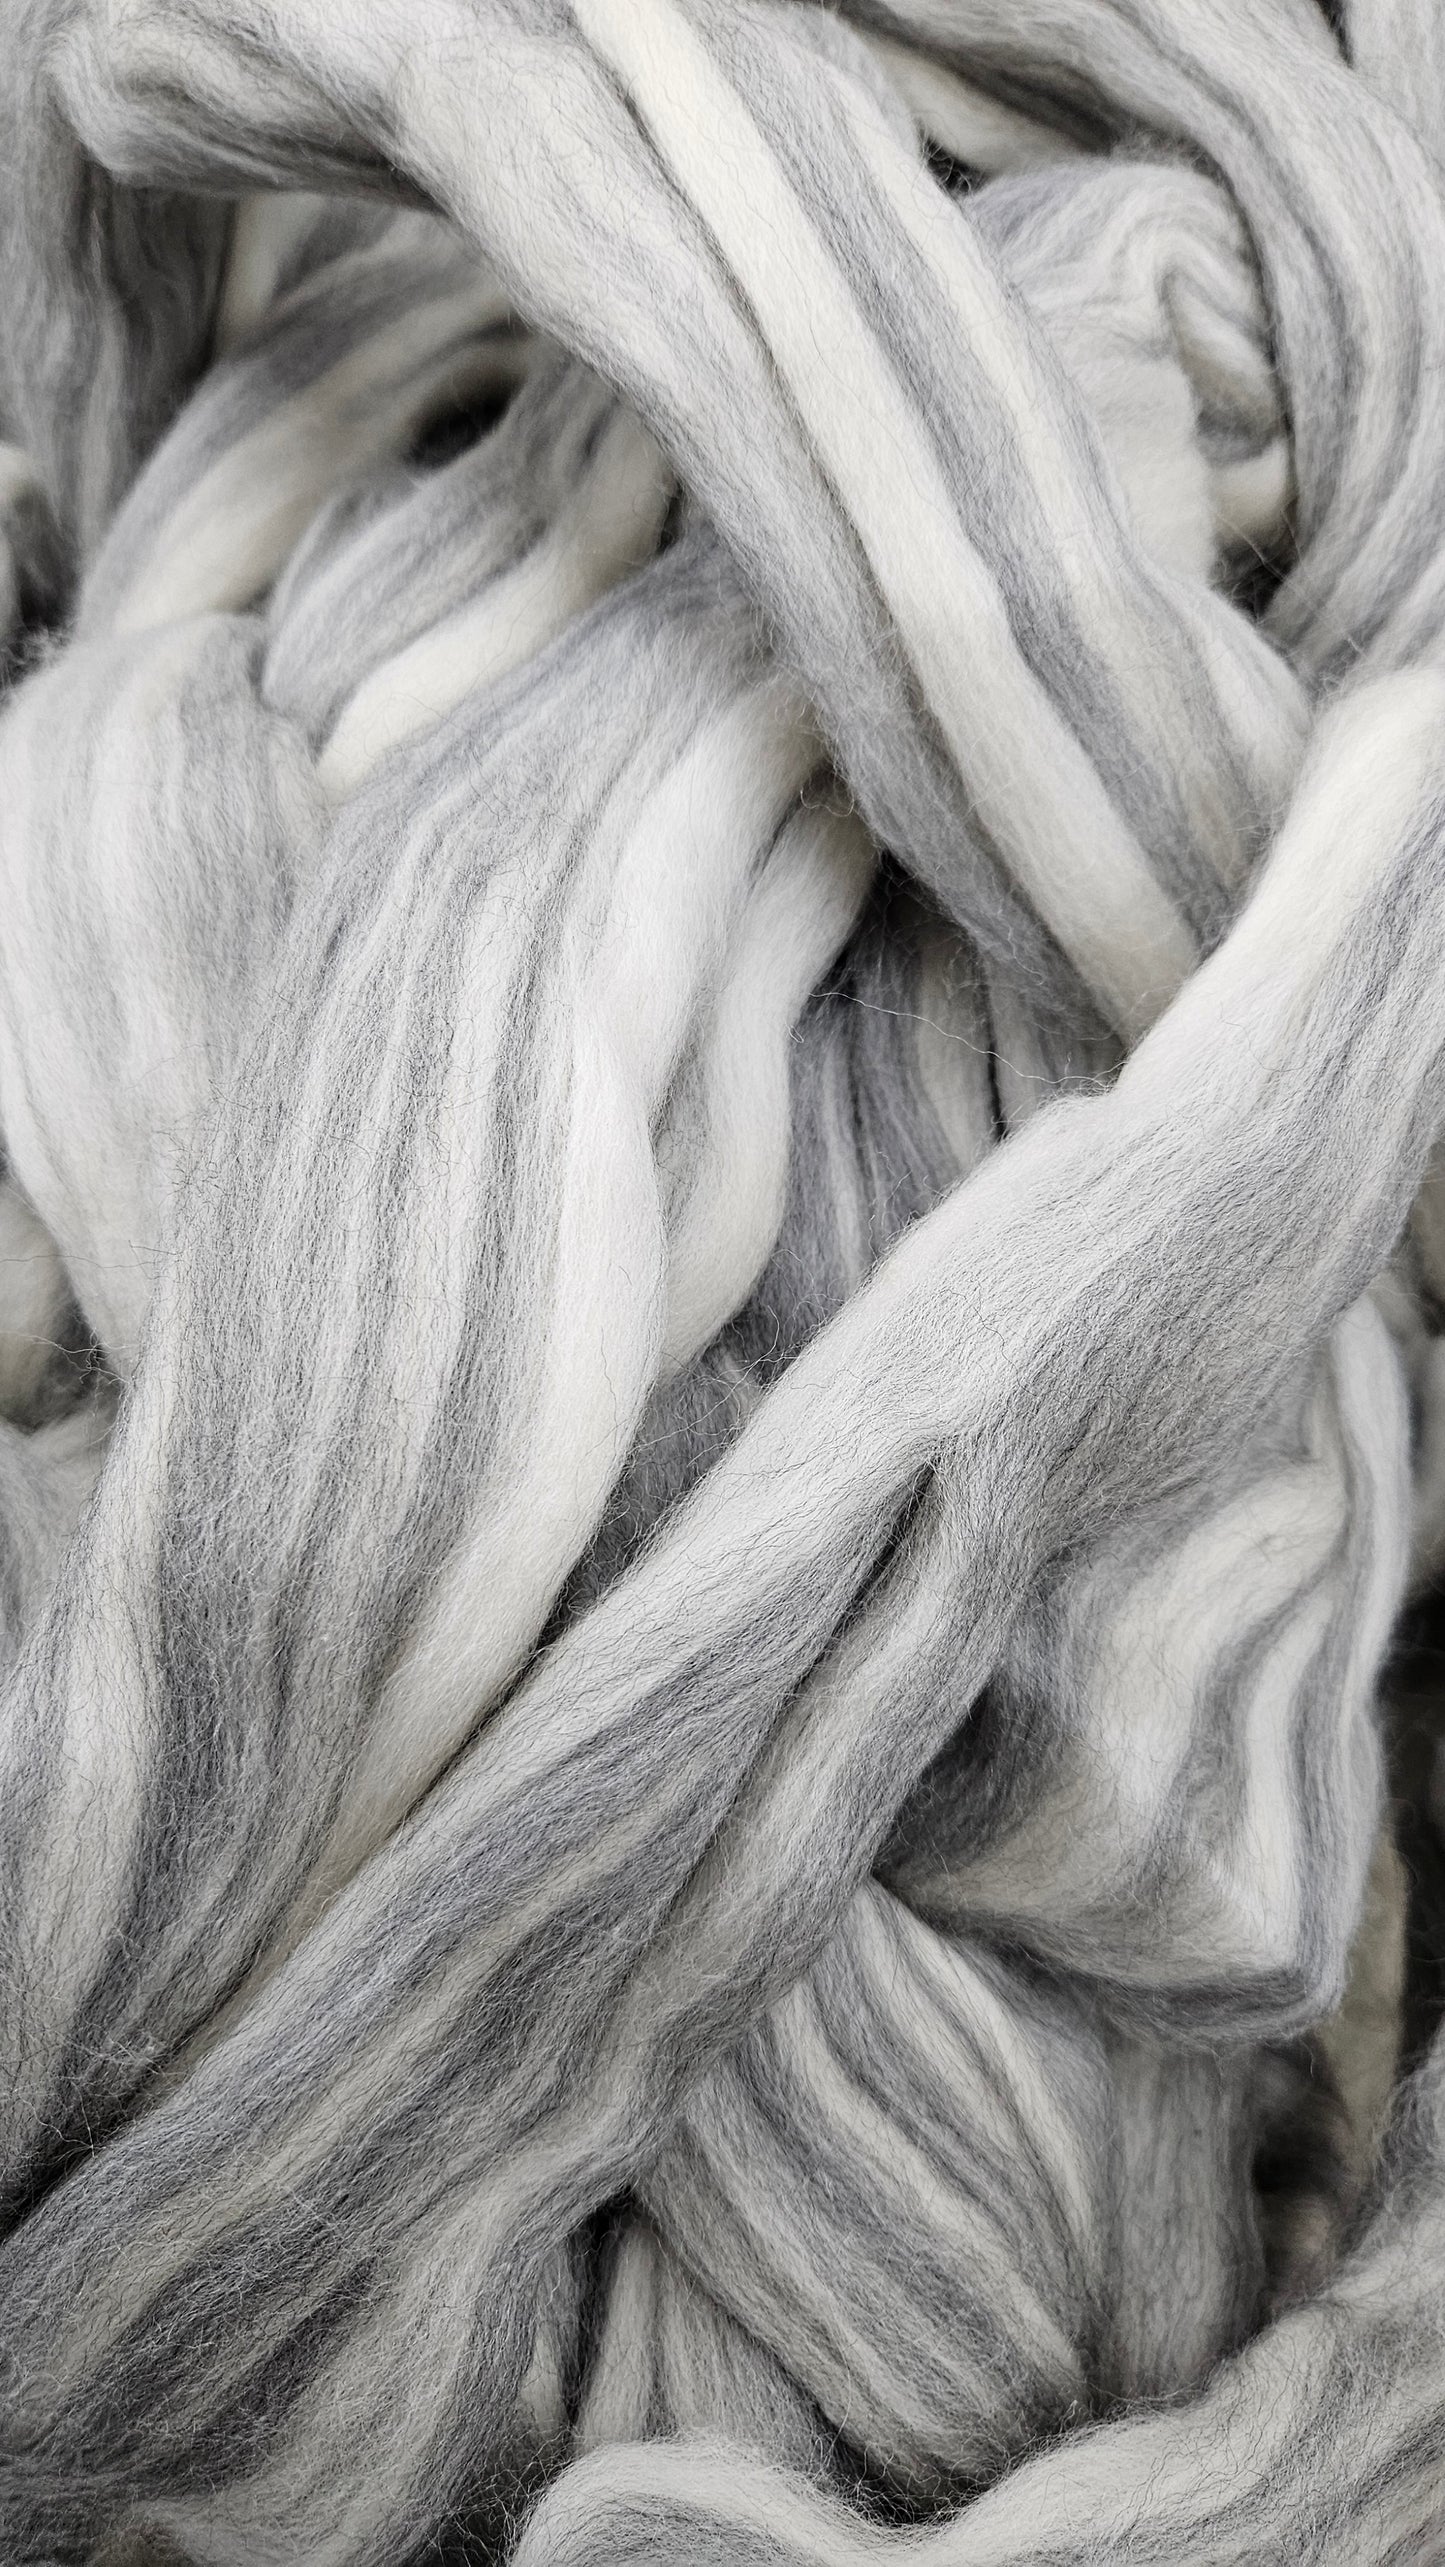 MERINO - Natural Wool Top Beginner Spinning Felting Carding Dyeing - 6 oz Grey White